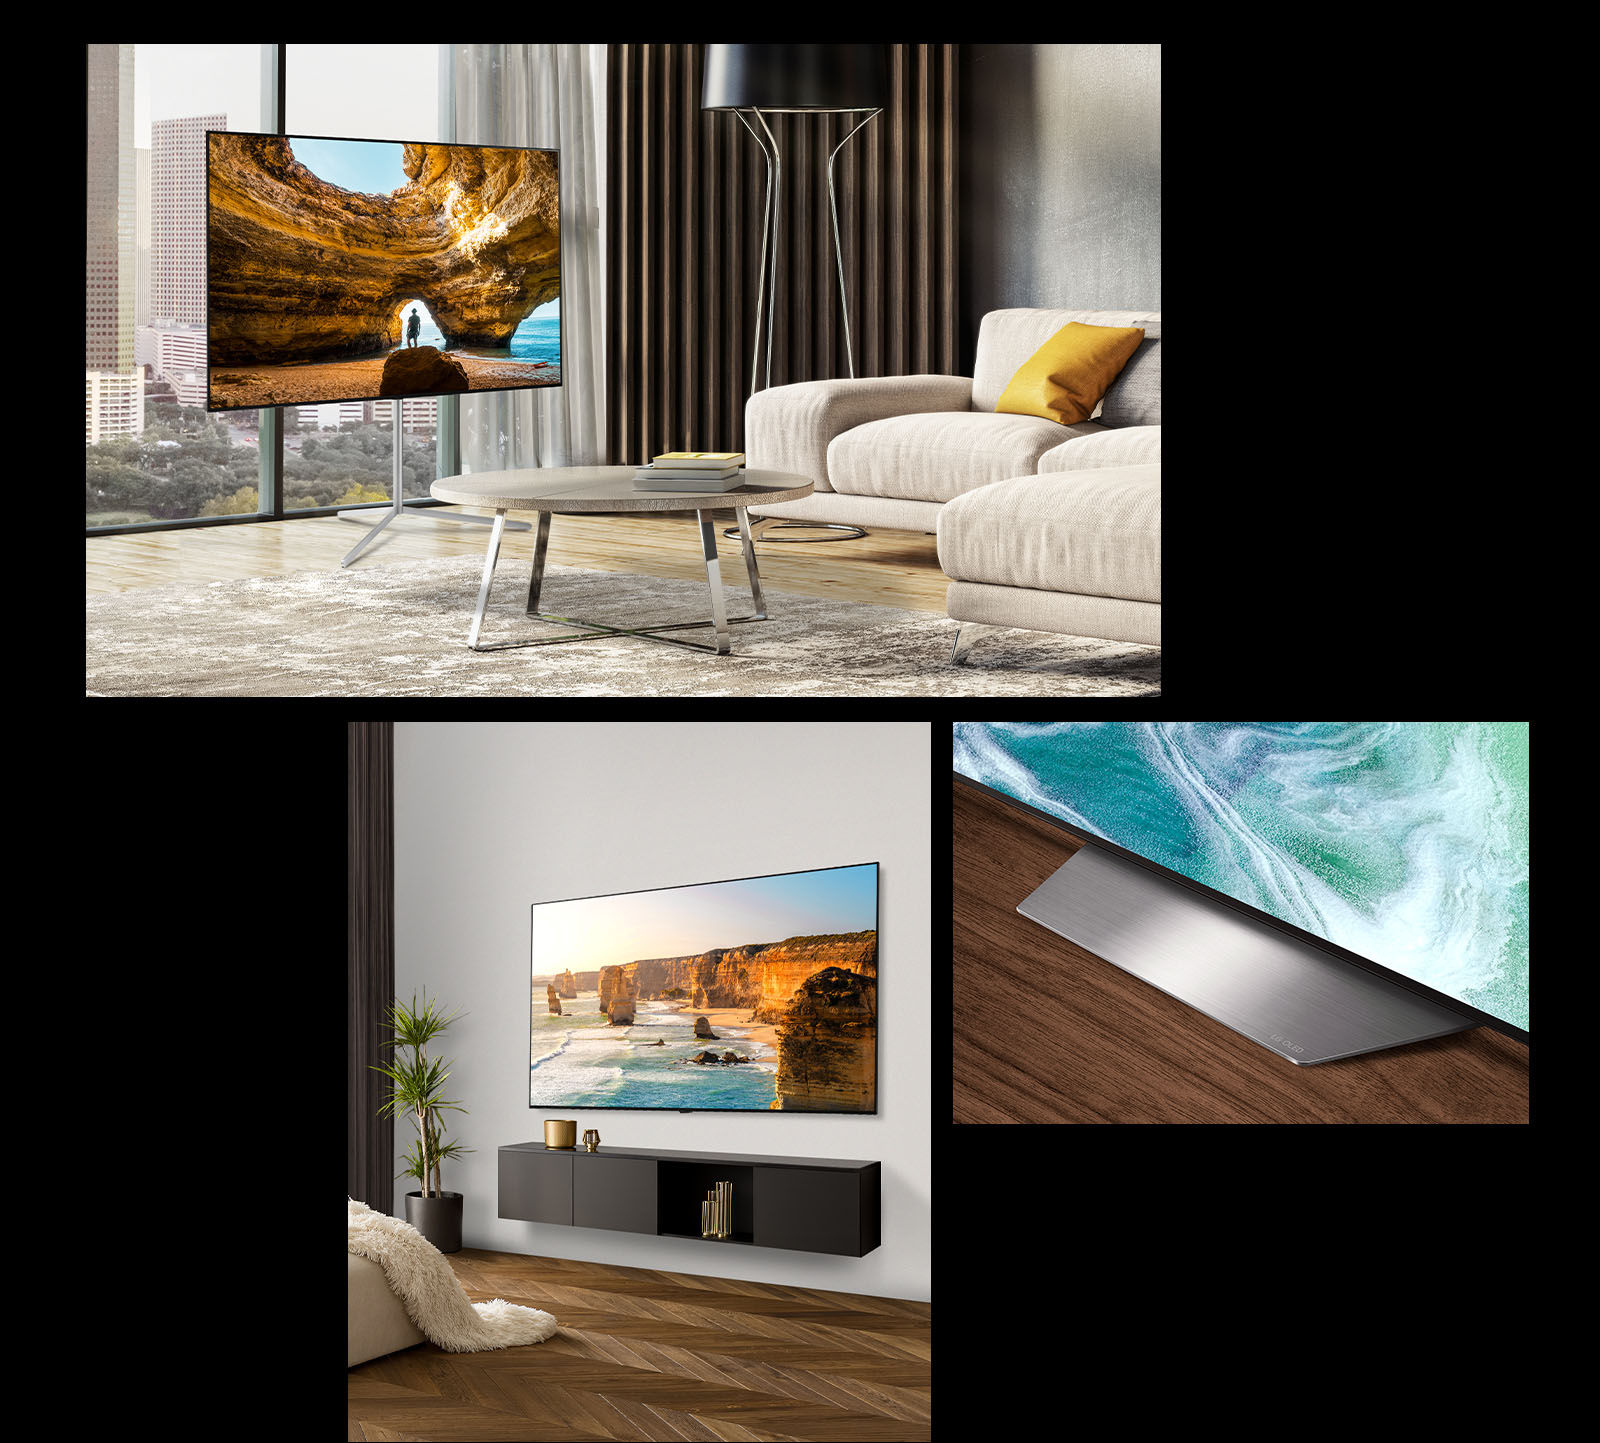 Obrázek LG OLED B3 na televizním stolku před oknem s výhledem na panoráma města. LG OLED B3 na stěně moderního pokoje. Spodní roh stojanu s televizorem LG OLED B3.